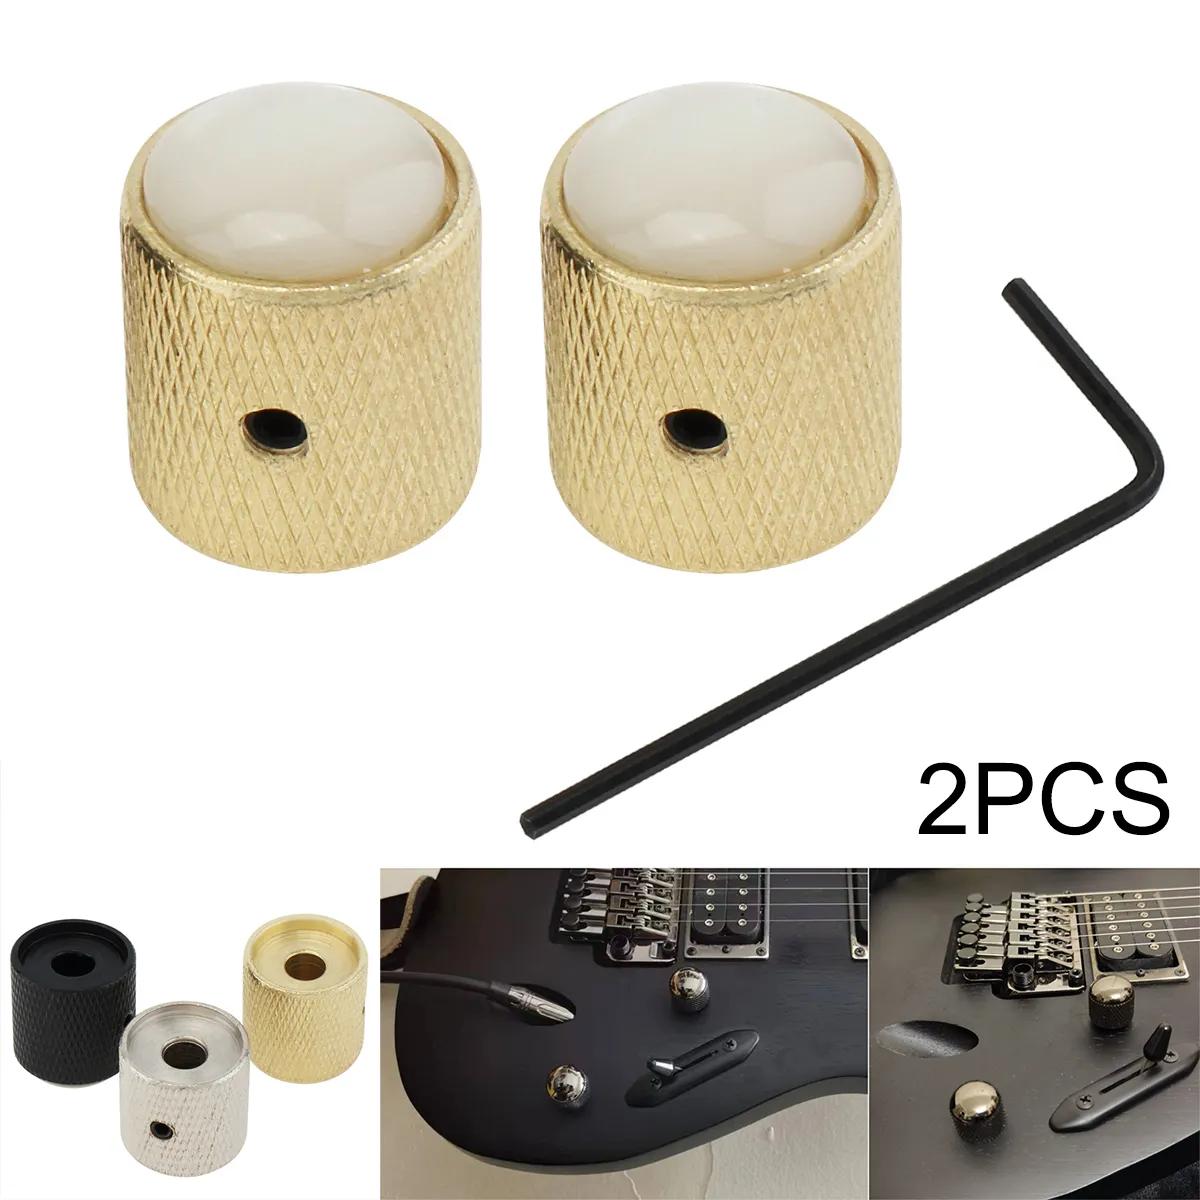 일렉트릭 기타베이스용 메탈 탑 볼륨 톤 컨트롤 노브, 조정 렌치 포함, 블랙 실버 골드 볼륨 버튼, 2 개